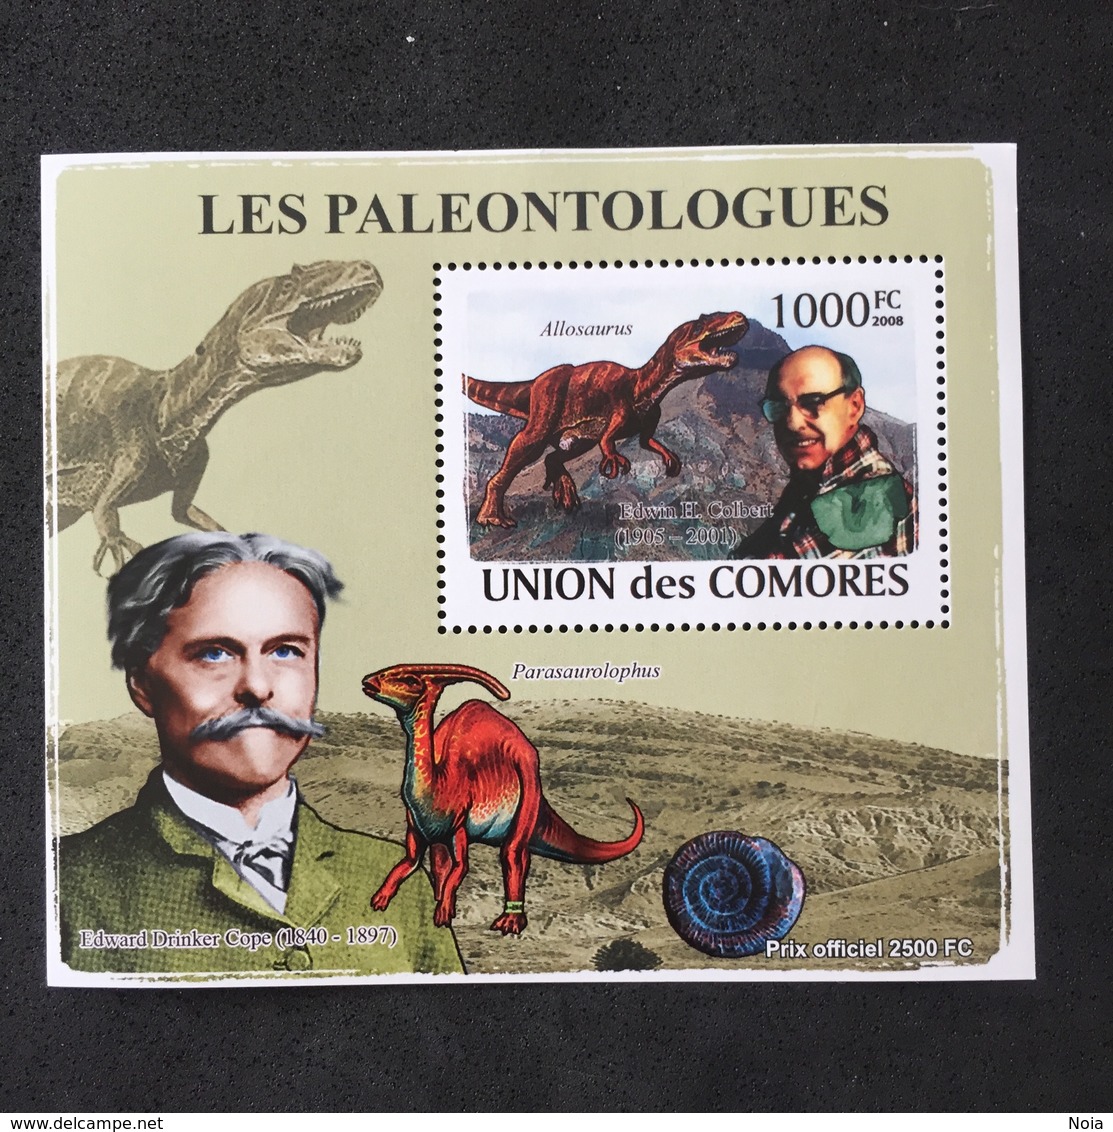 UNION DES COMORES. PALEONTOLOGUES. MNH. D2710B - Prehistorics